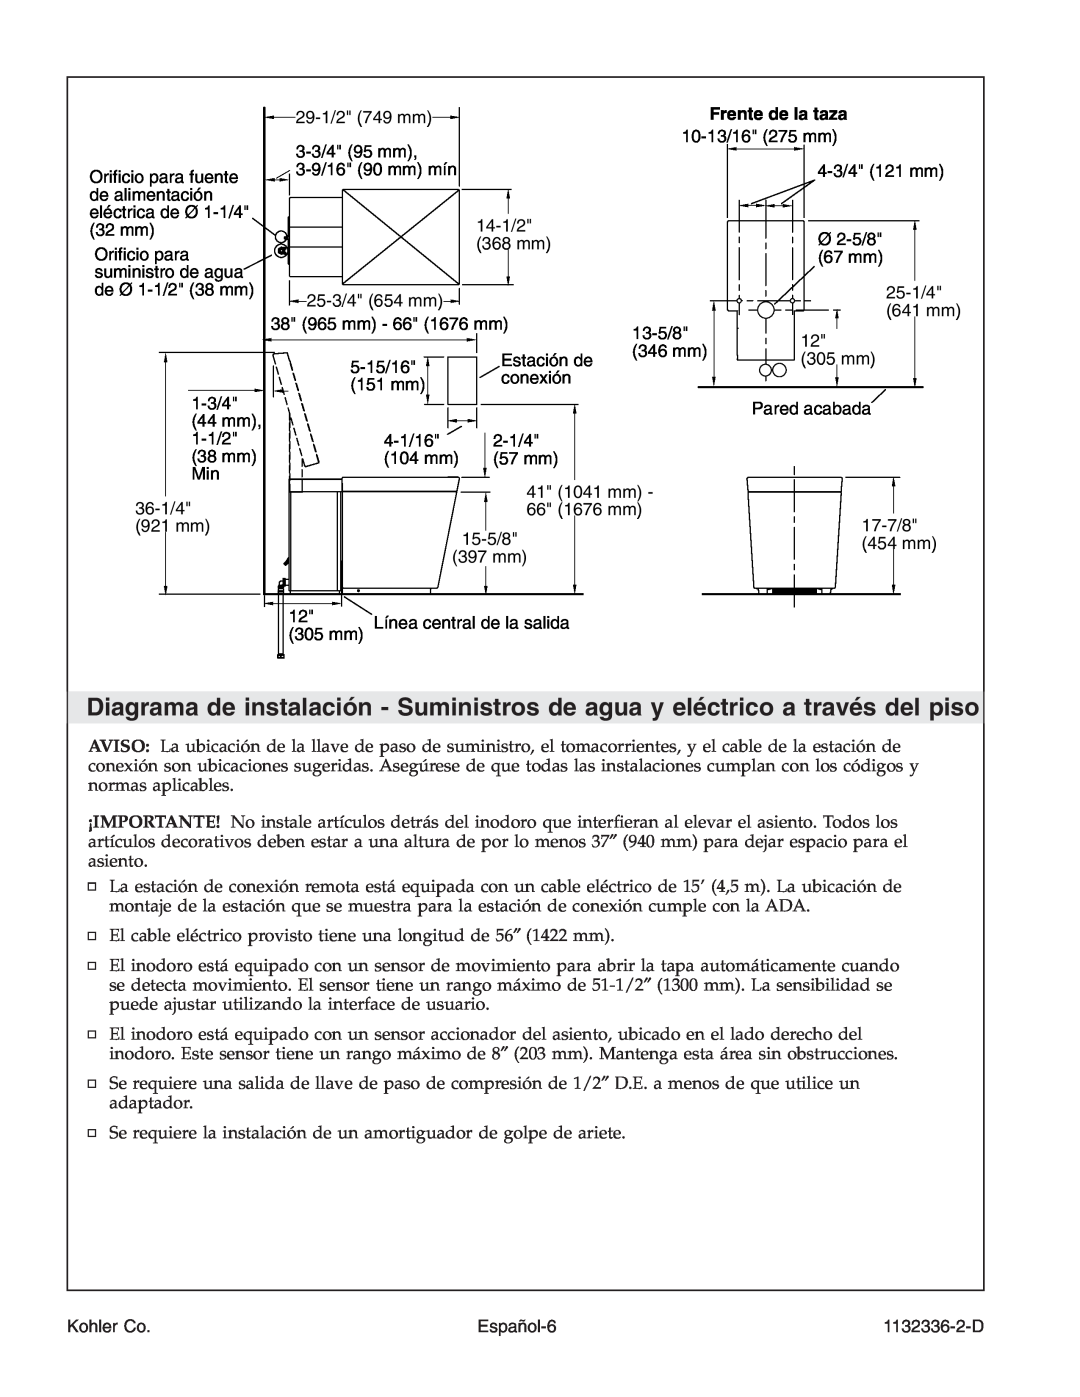 Kohler K-3900 manual Español-6, Frente de la taza, Kohler Co, 1132336-2-D 